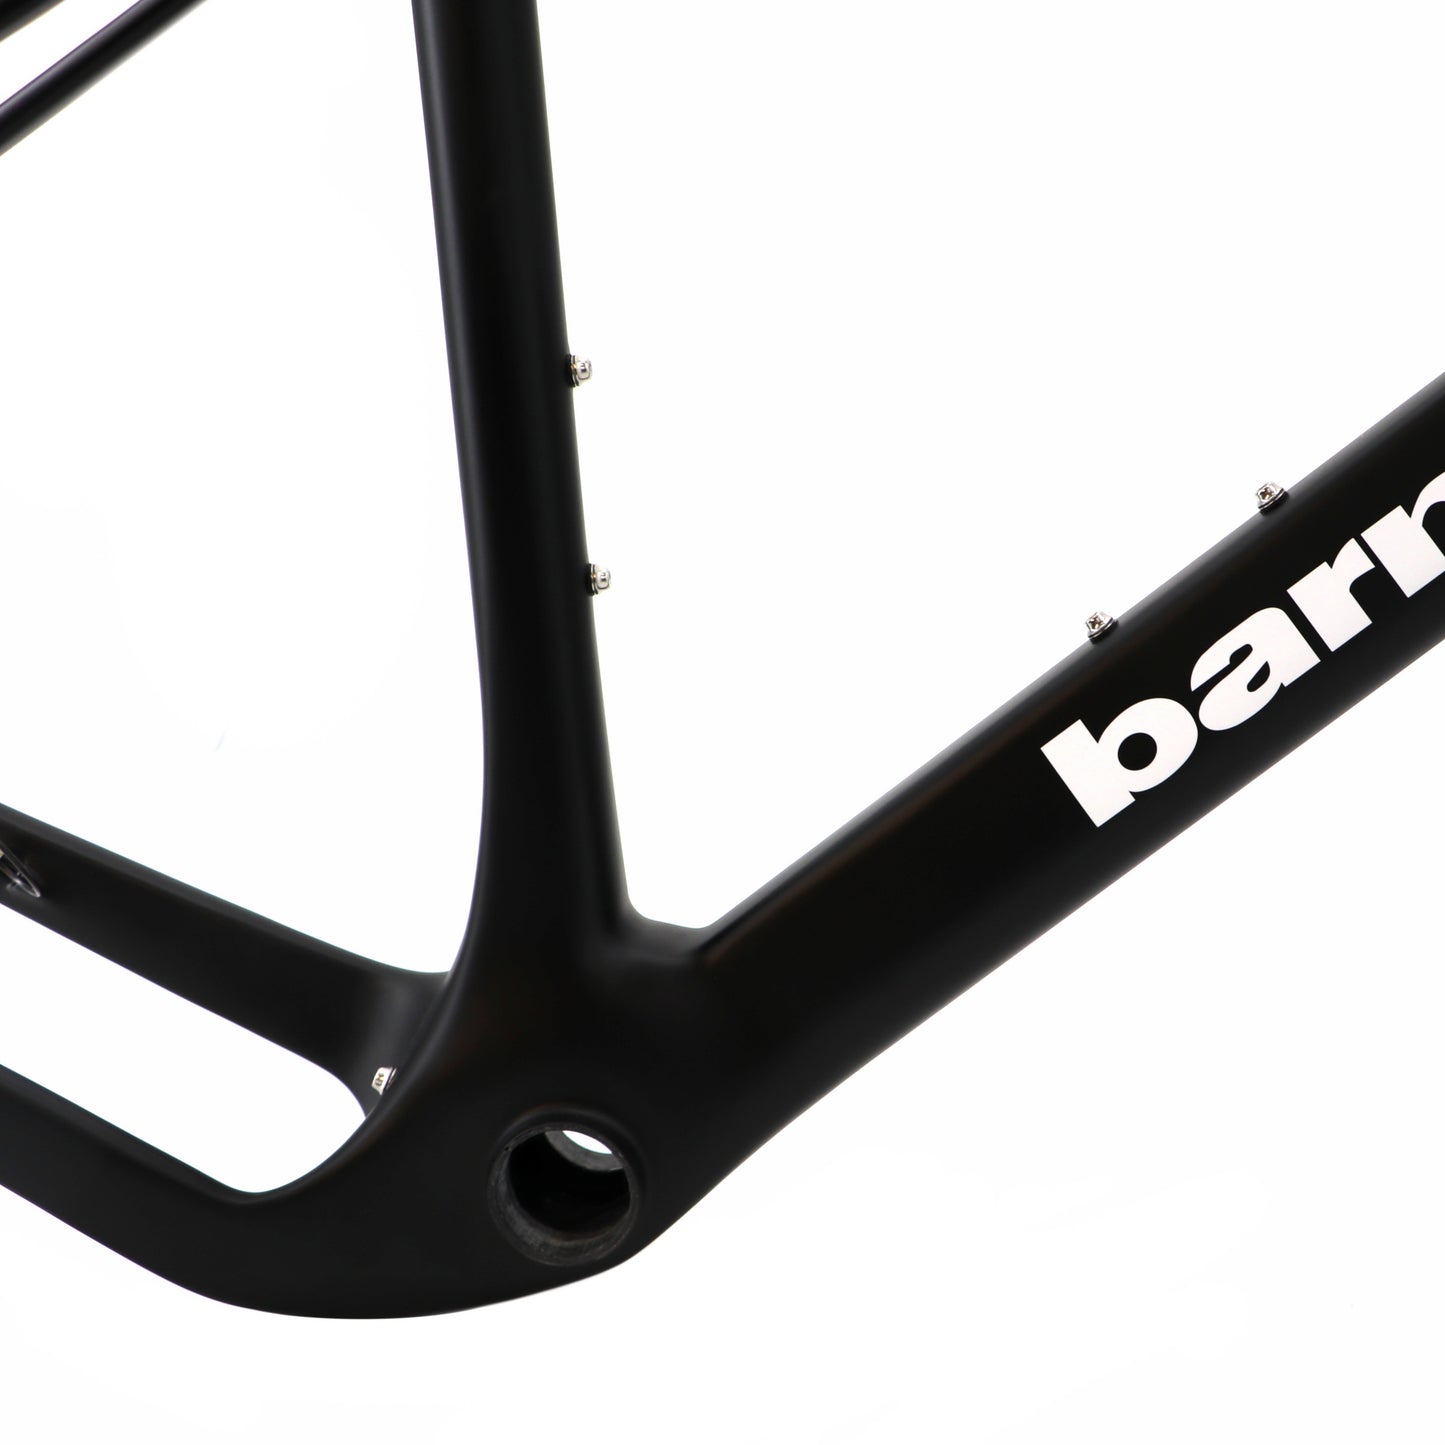 Rama roweru szutrowego BGC-01 z włókna węglowego, czarna